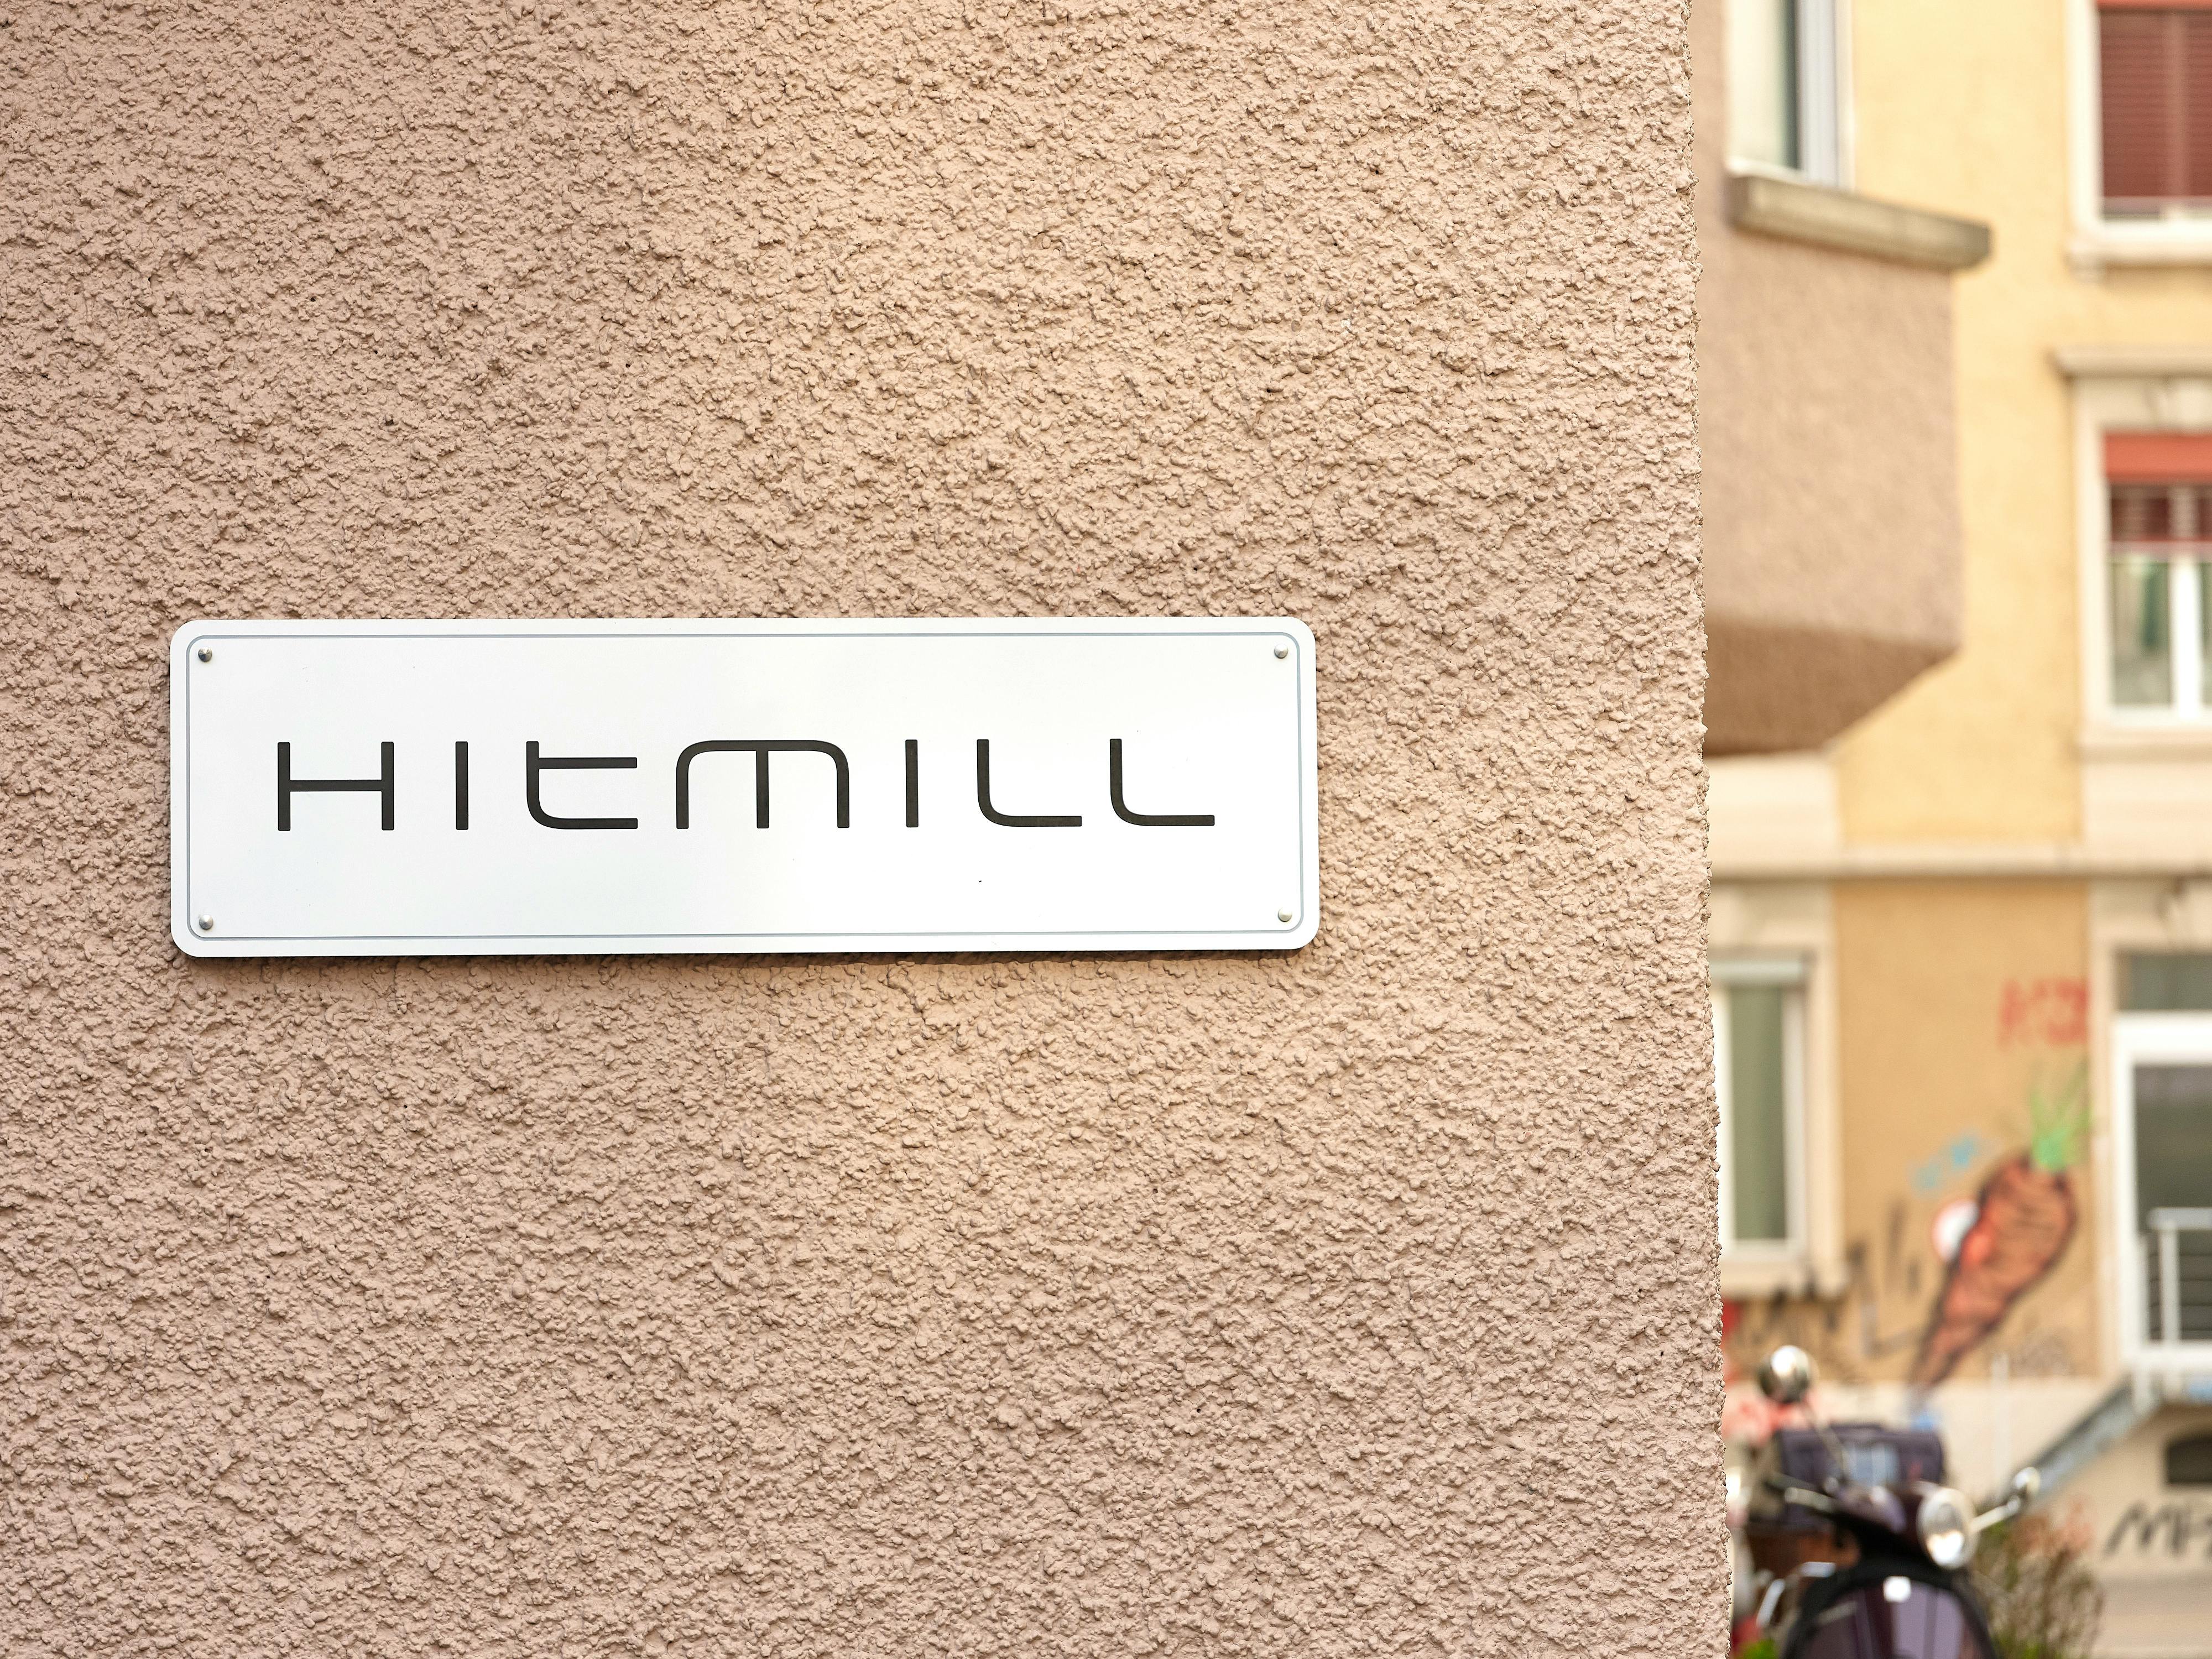 Ein Schild zeigt den Standort des HitMill-Studios in Zürich.